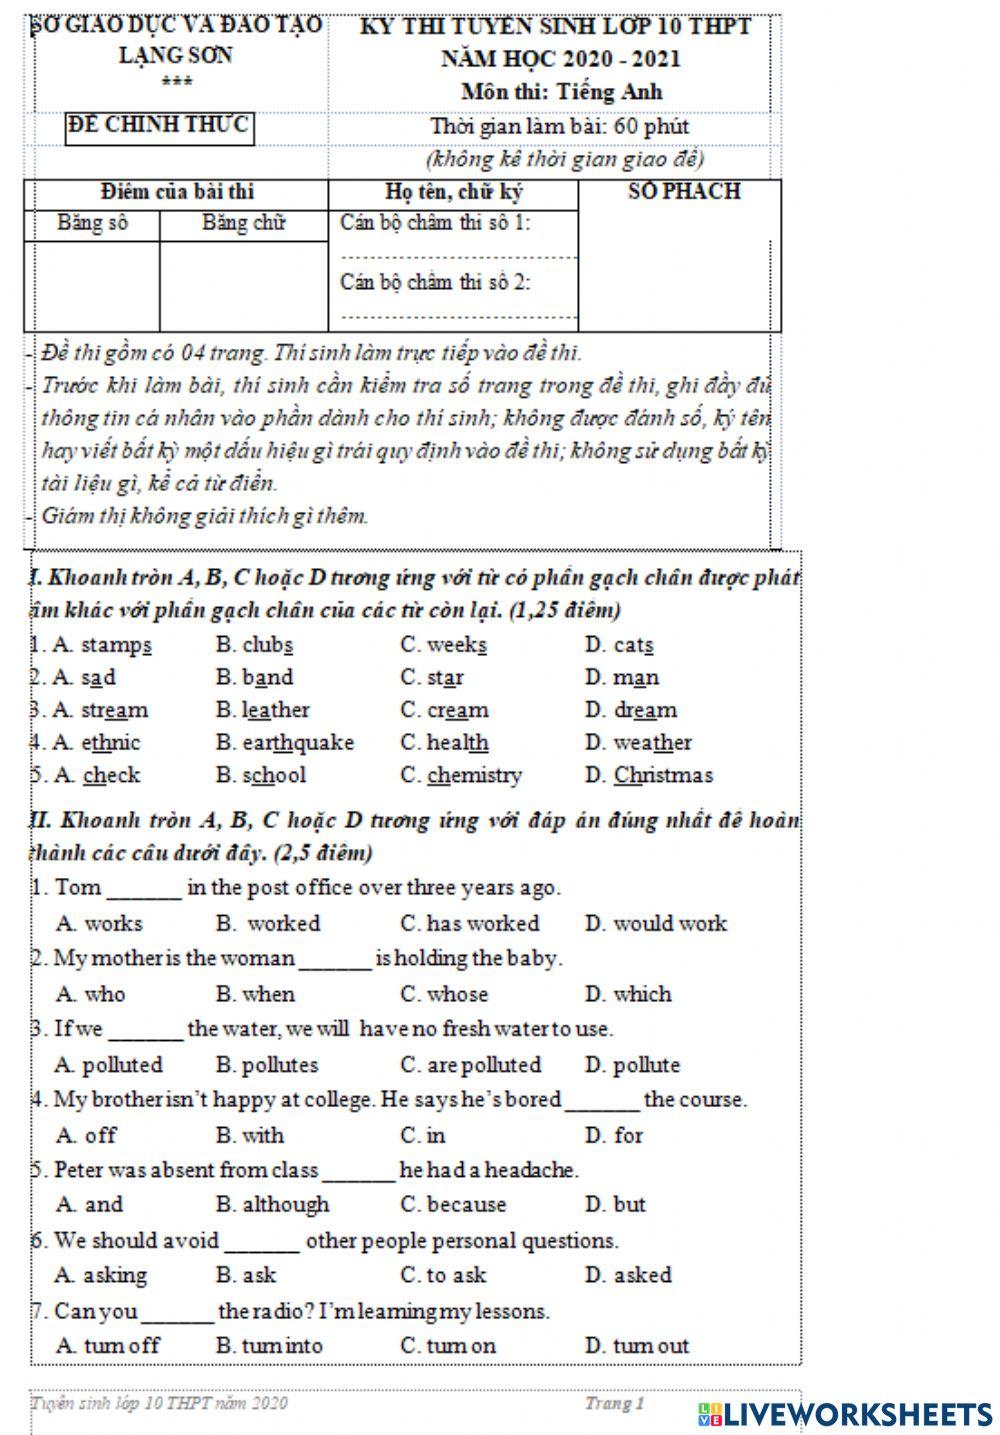 Test 20-21 (Teacher: Nong Le Van)